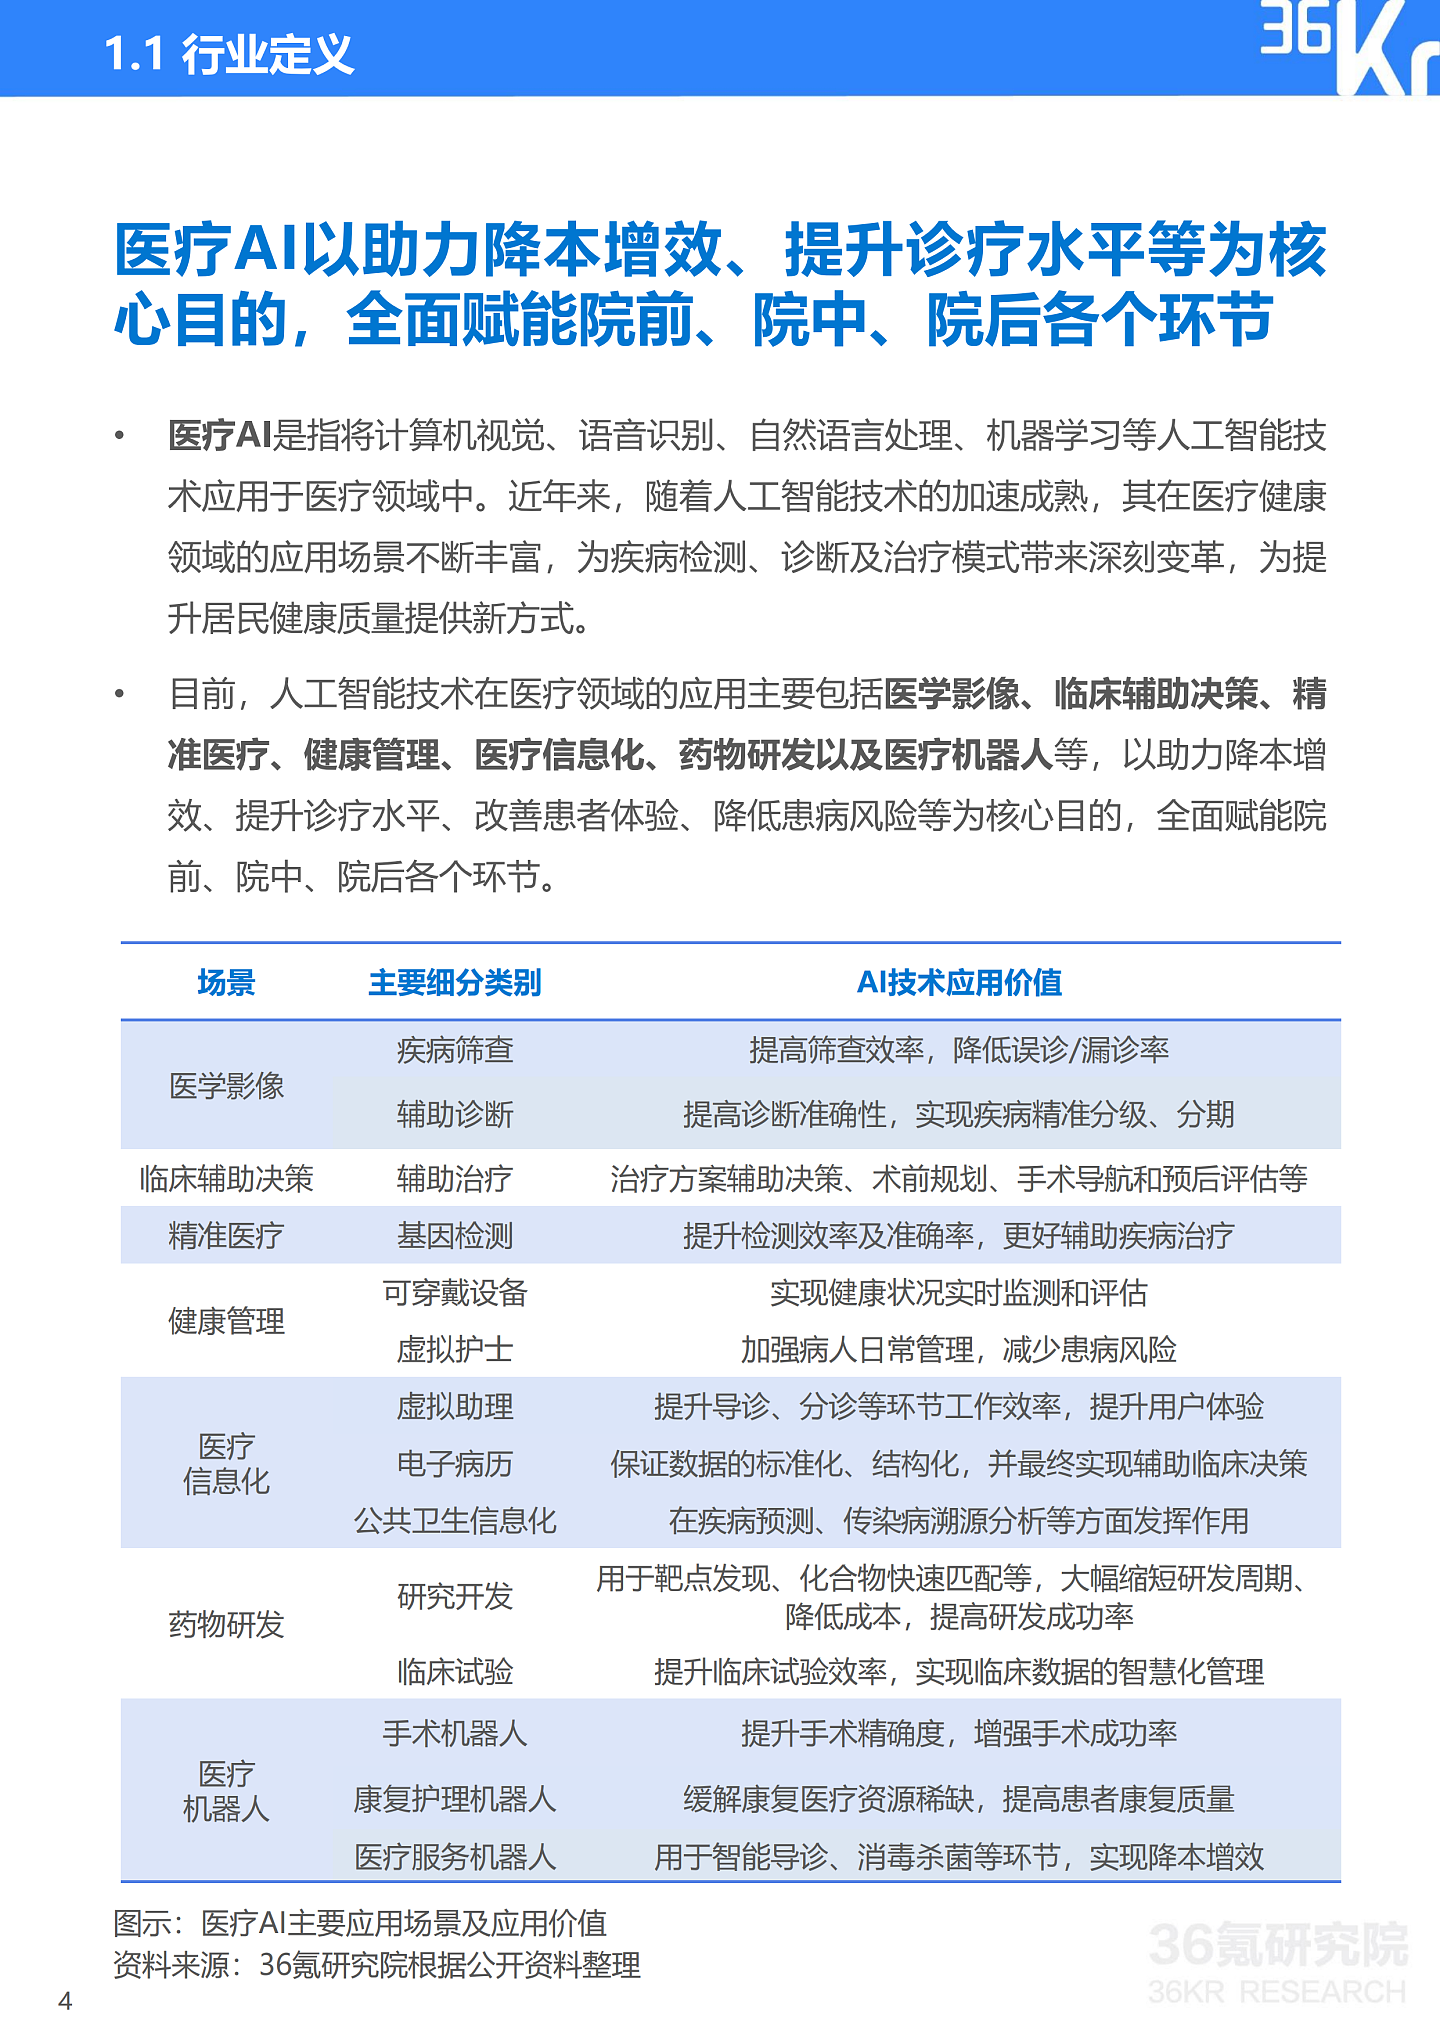 36氪研究院 | 2021年中国医疗AI行业研究报告 - 7